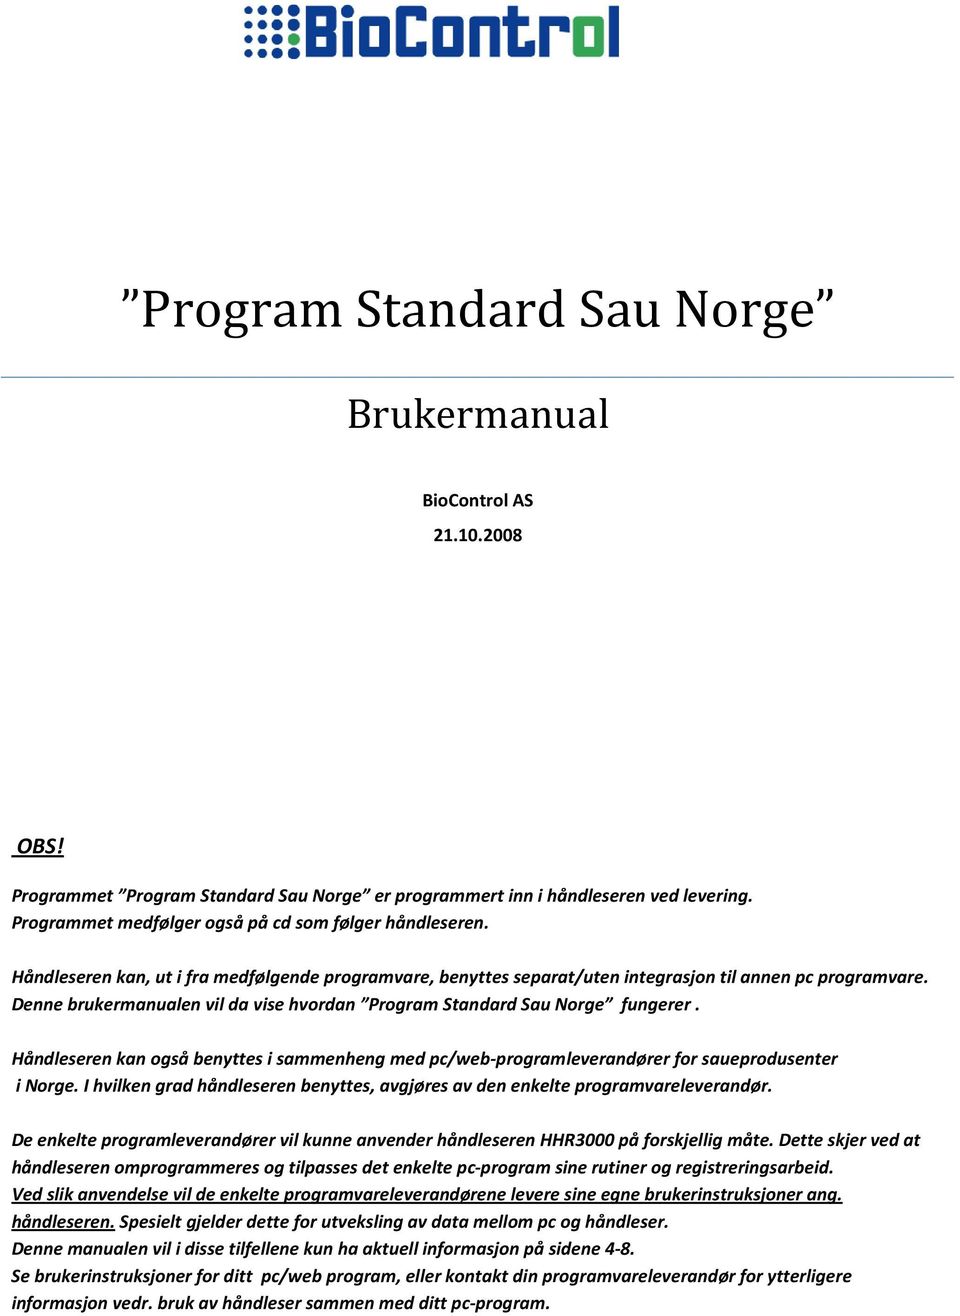 Denne brukermanualen vil da vise hvordan Program Standard Sau Norge fungerer. Håndleseren kan også benyttes i sammenheng med pc/web-programleverandører for saueprodusenter i Norge.